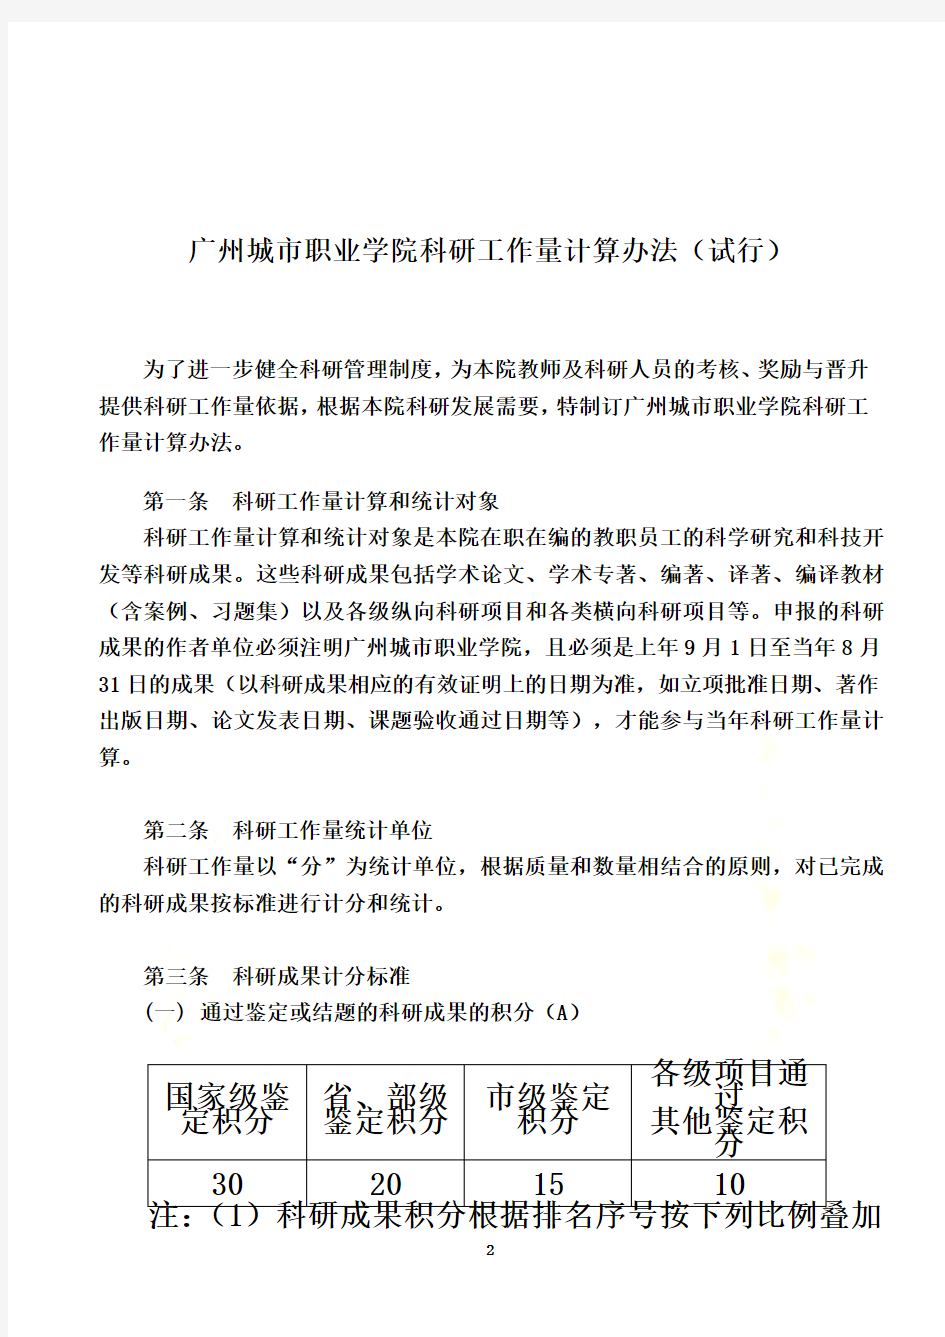 广州城市职业学院科研工作量计算办法(试行)